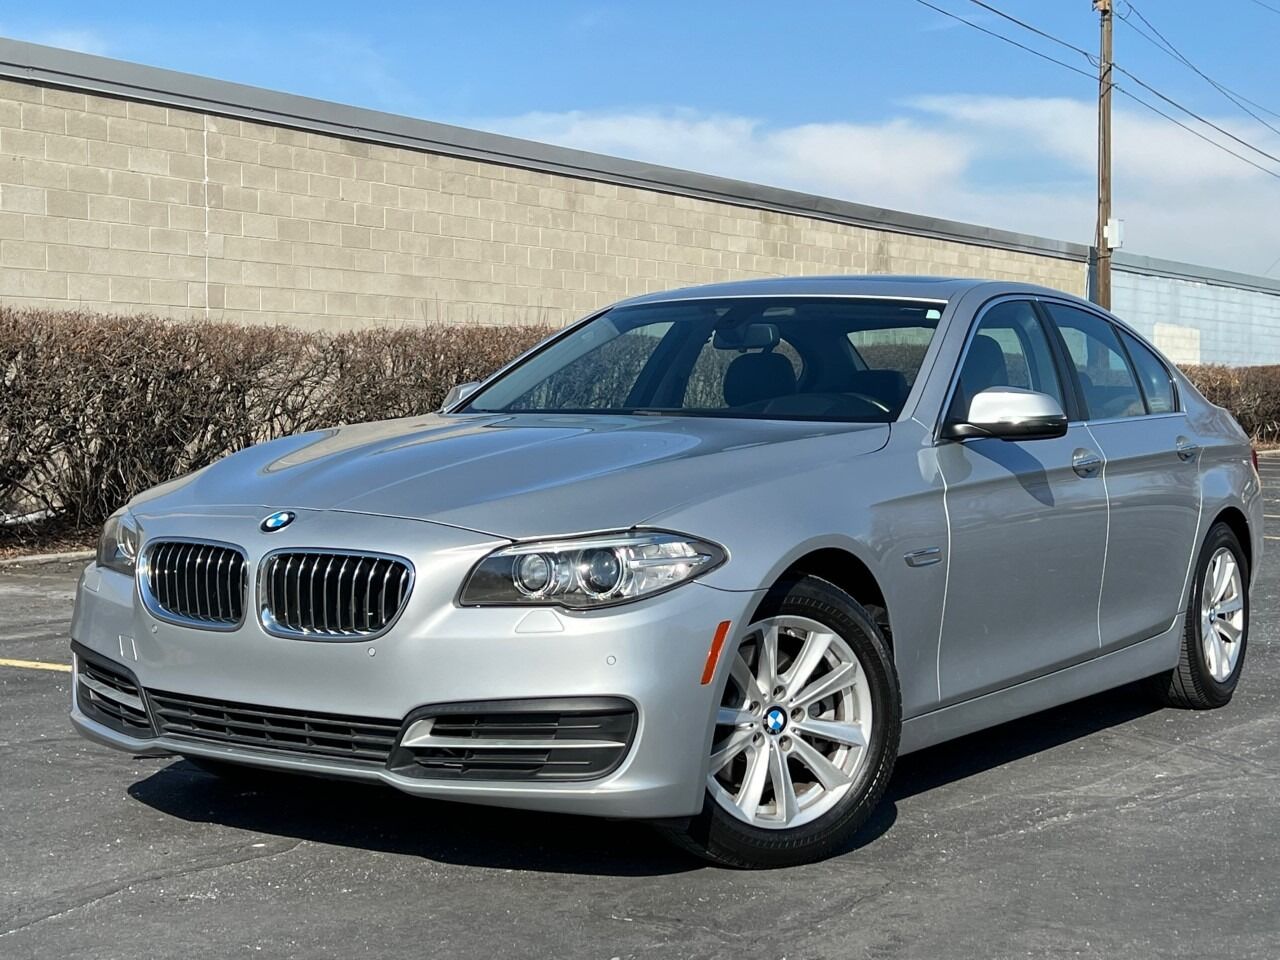 2014 BMW 5 Series For Sale In Ogden, UT - Carsforsale.com®